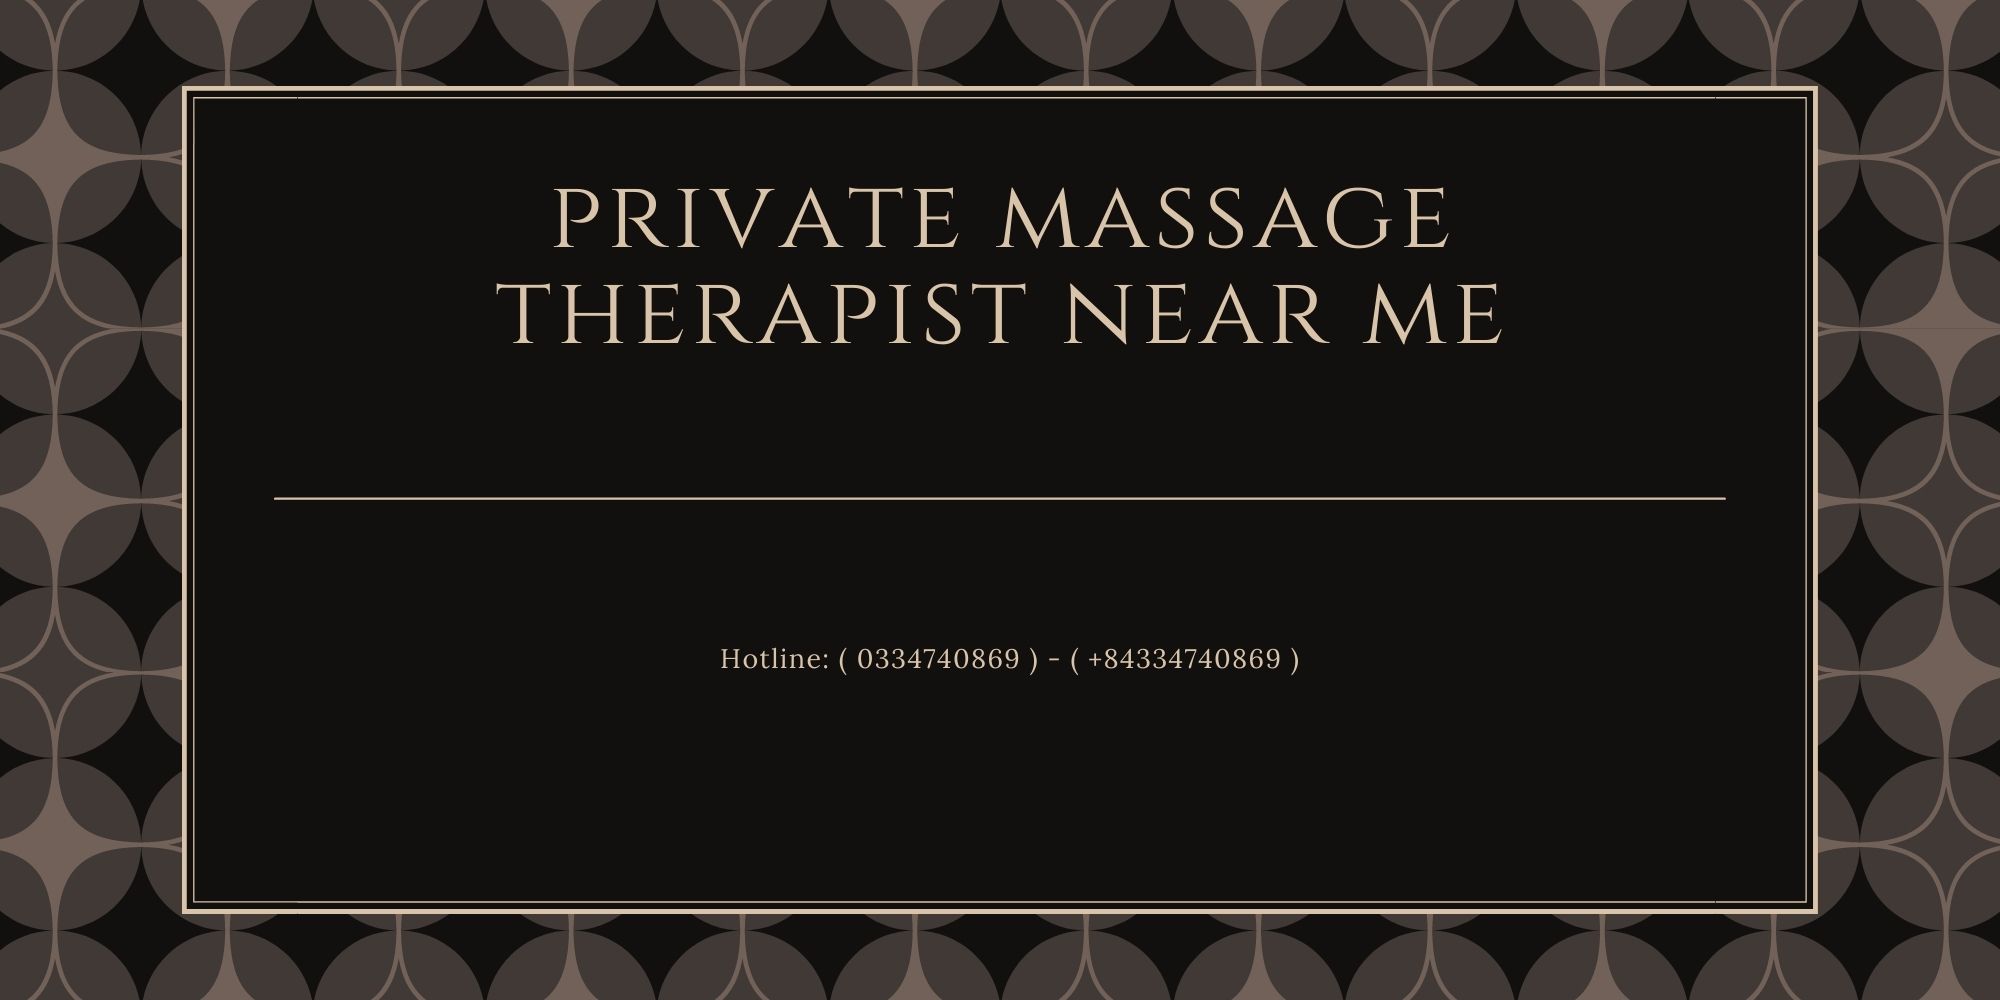 Private Massage Therapist Near Me Ad Massage